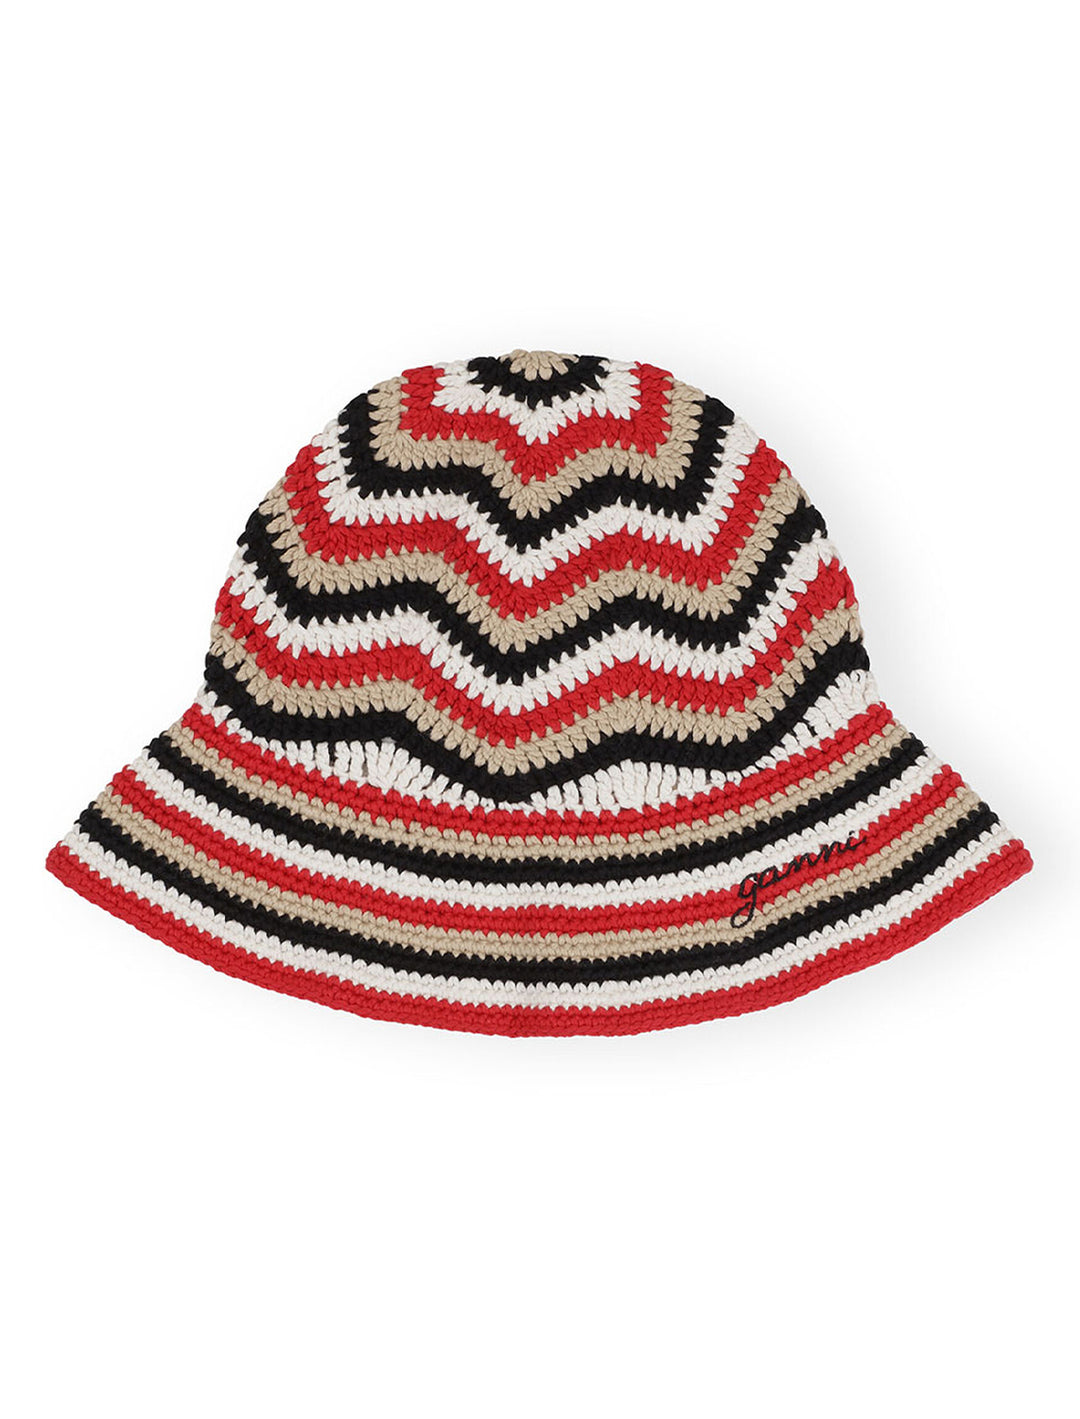 Overhead view of GANNI's cotton crochet bucket hat in racing red.